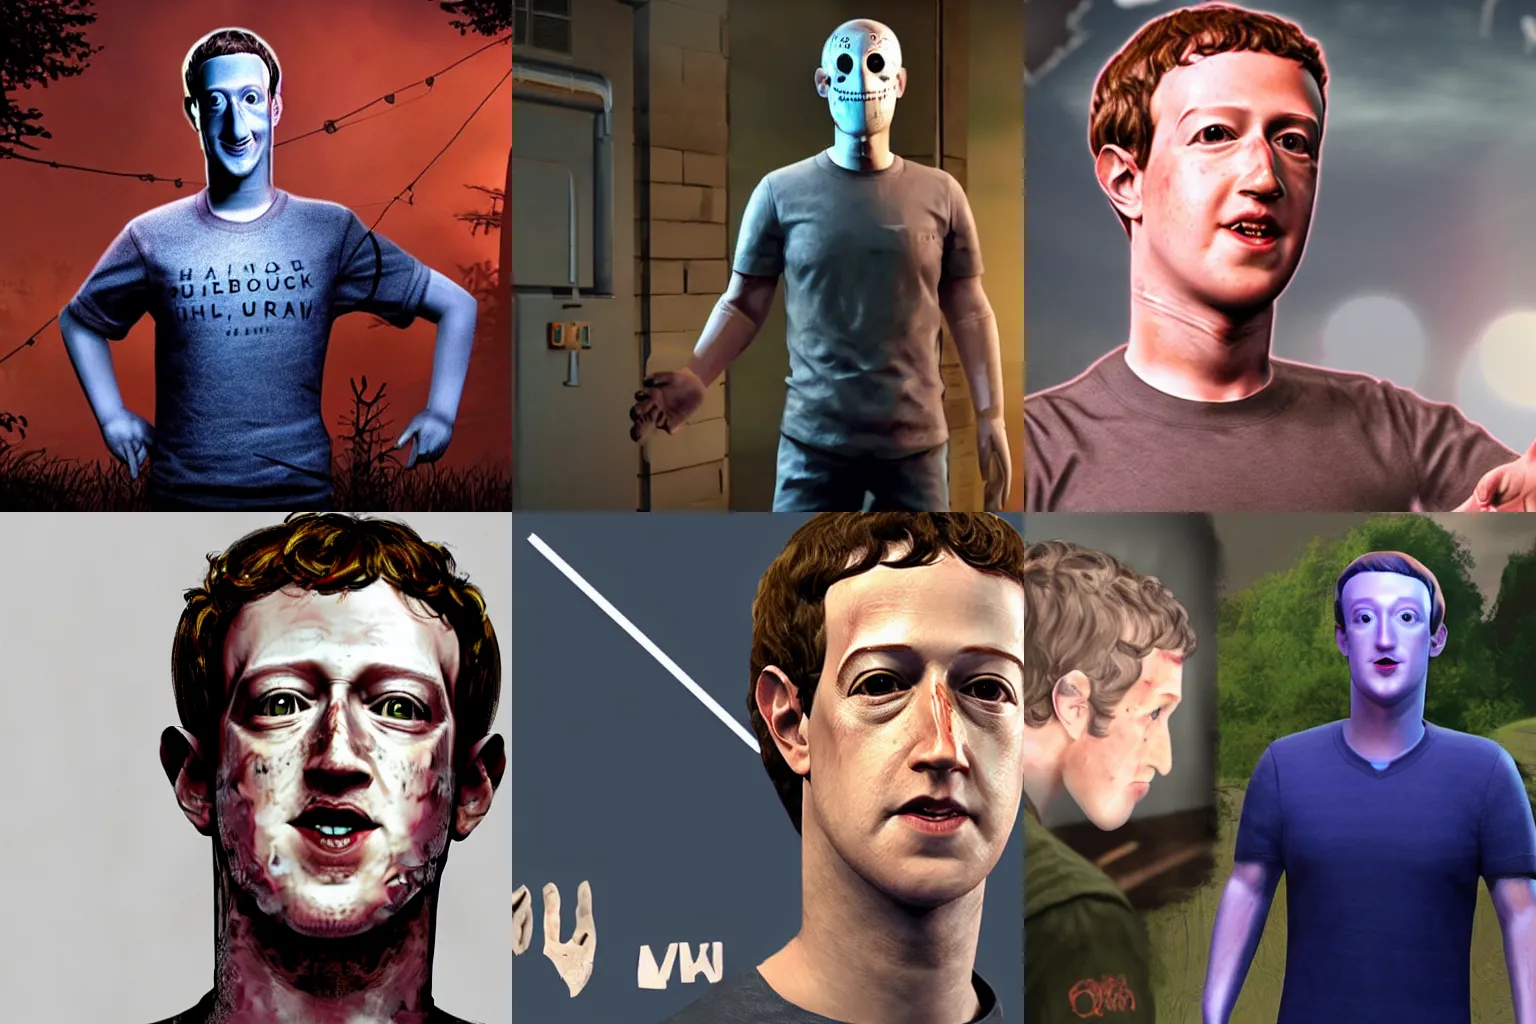 Prompt: Mark Zuckerberg as a villain in Dead By Daylight